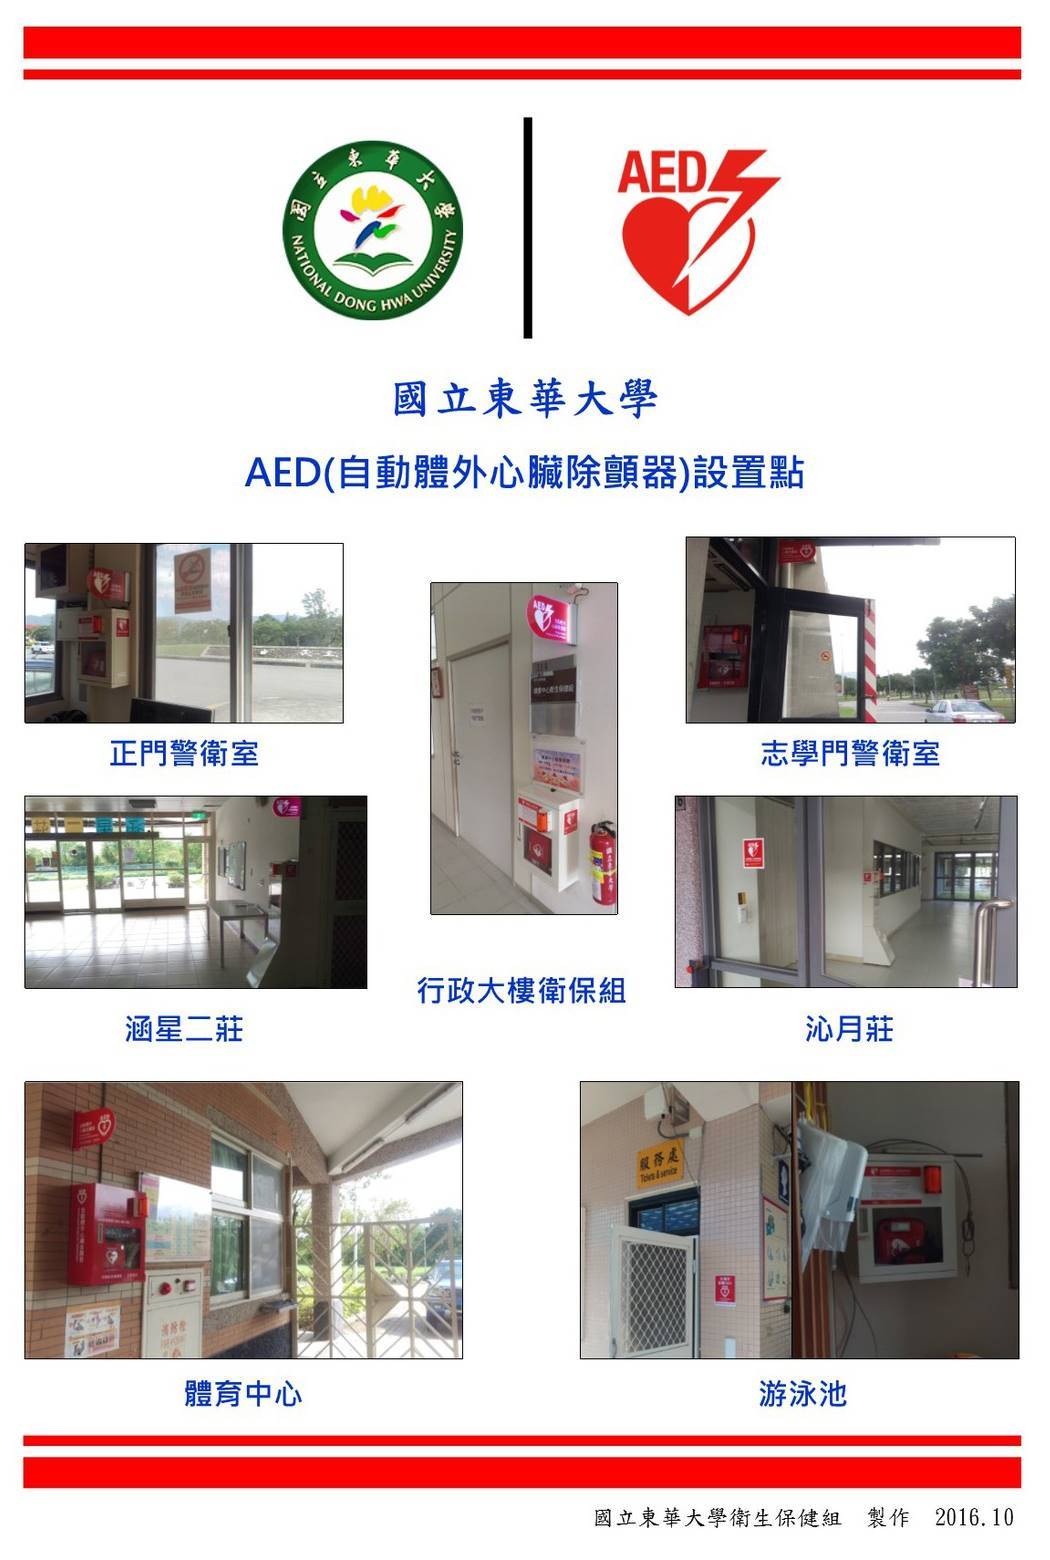 AED設置位置一覽表